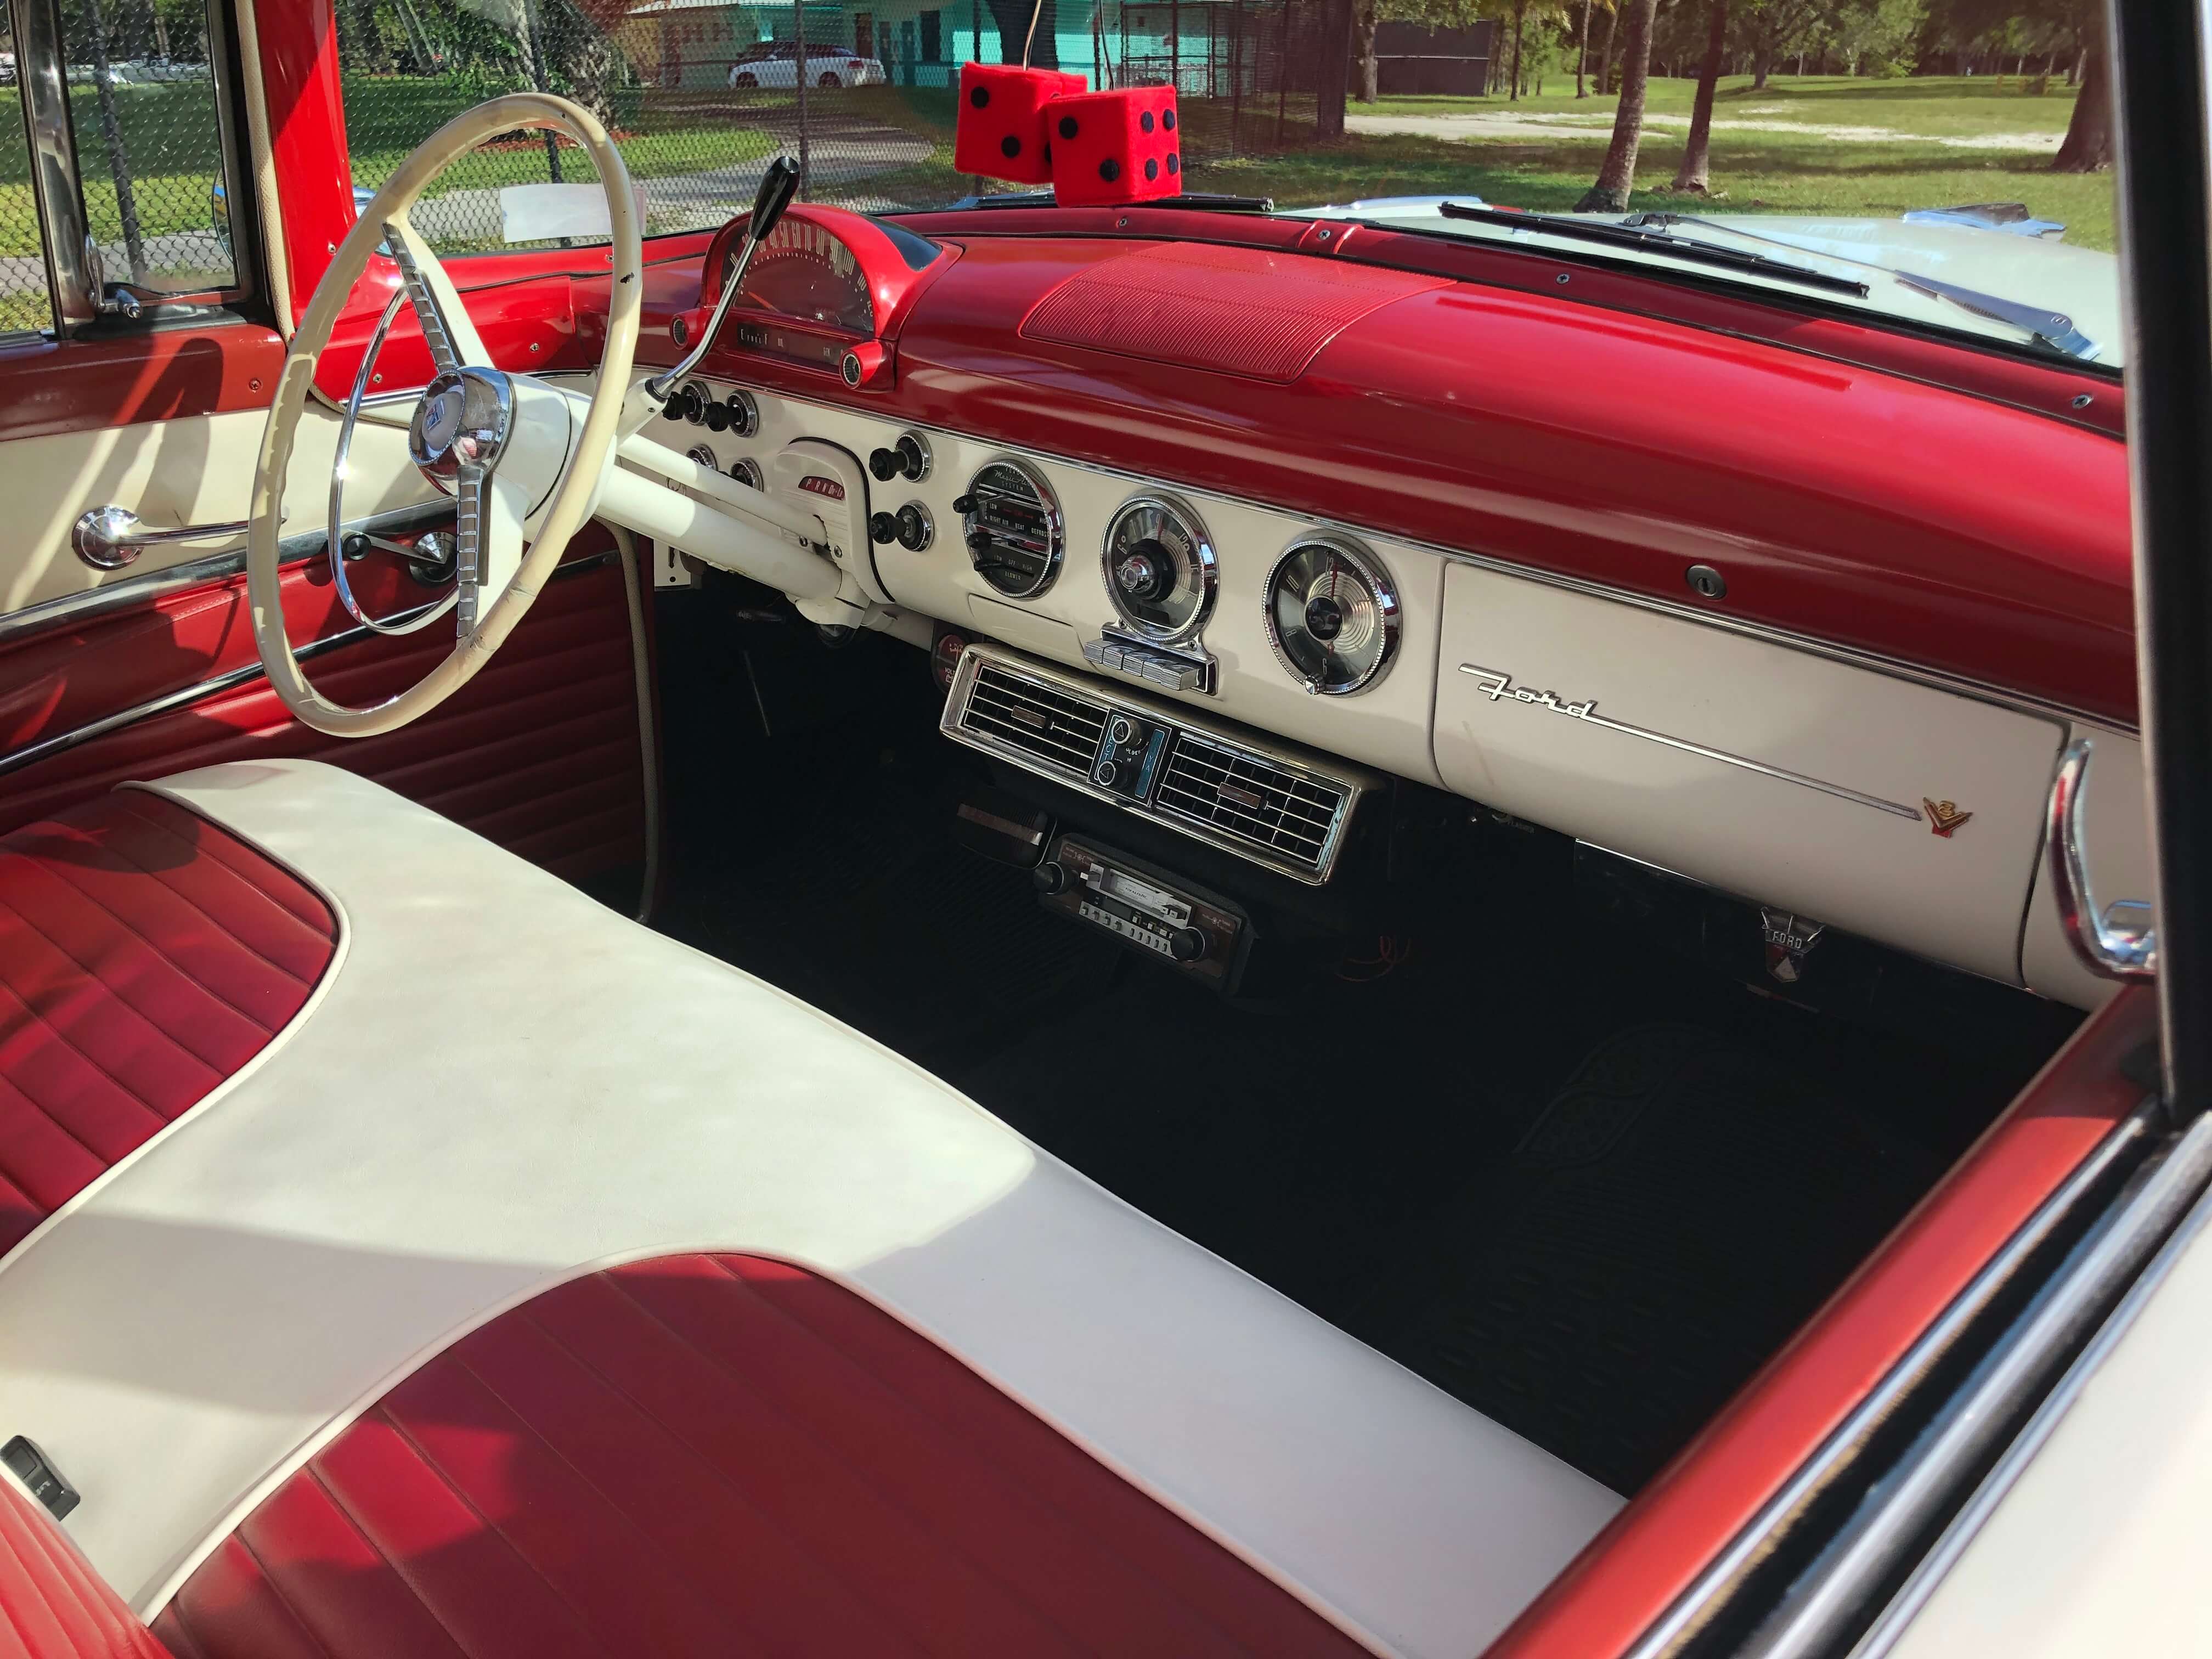 1955 Ford Crown Victoria interior